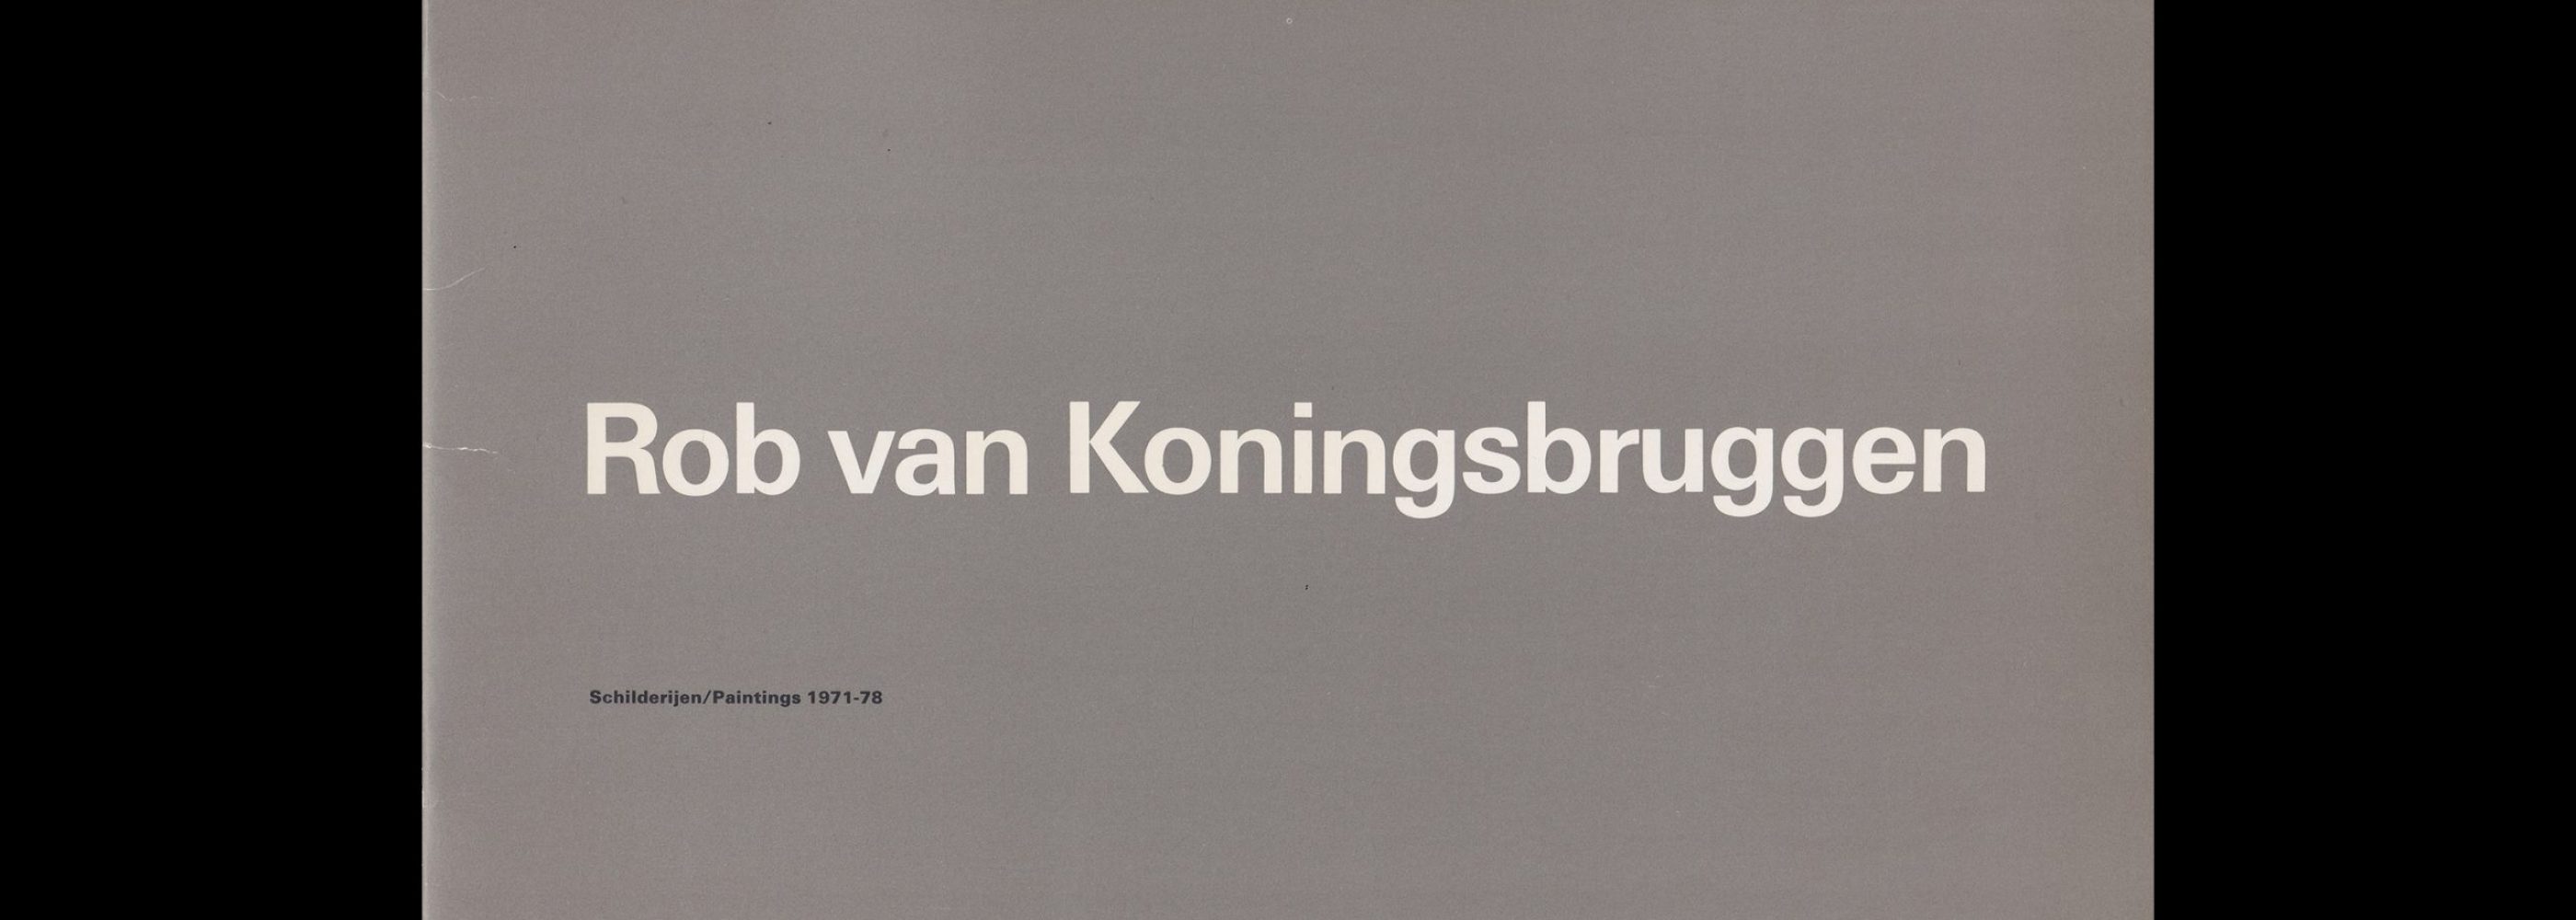 Rob van Koningsbruggen, Stedelijk Museum, Amsterdam, 1979 designed by Wim Crouwel (Total Design)